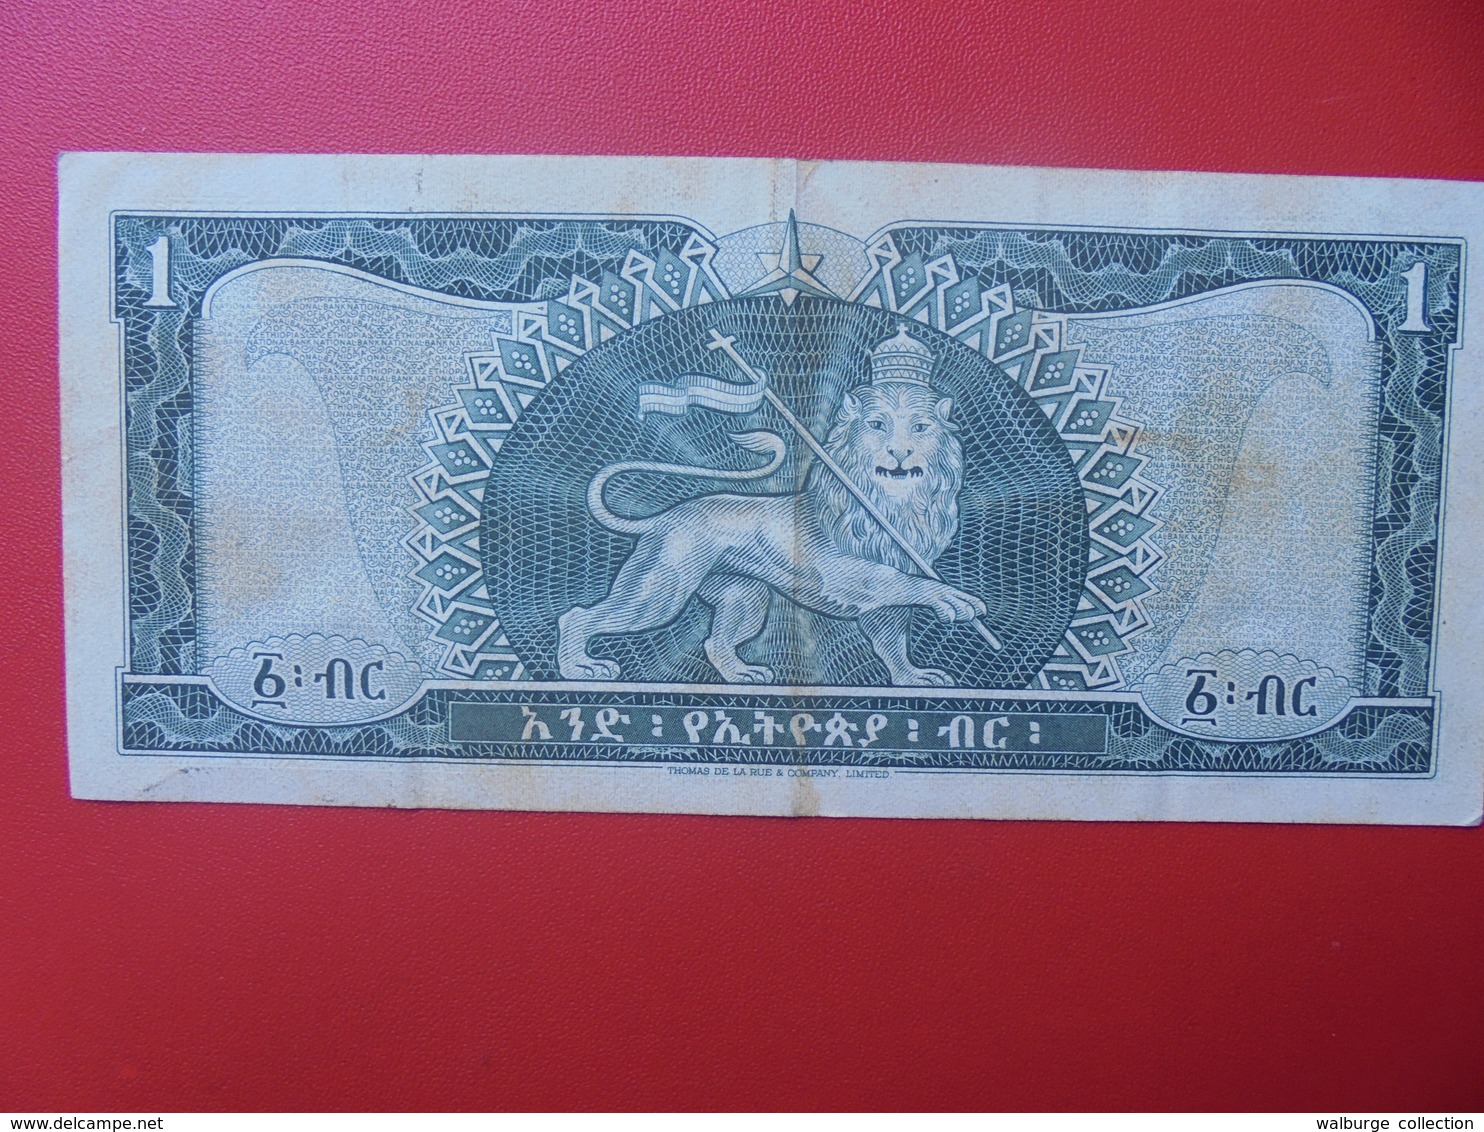 ETHIOPIE 1 DOLLAR 1966 CIRCULER (B.6) - Ethiopie